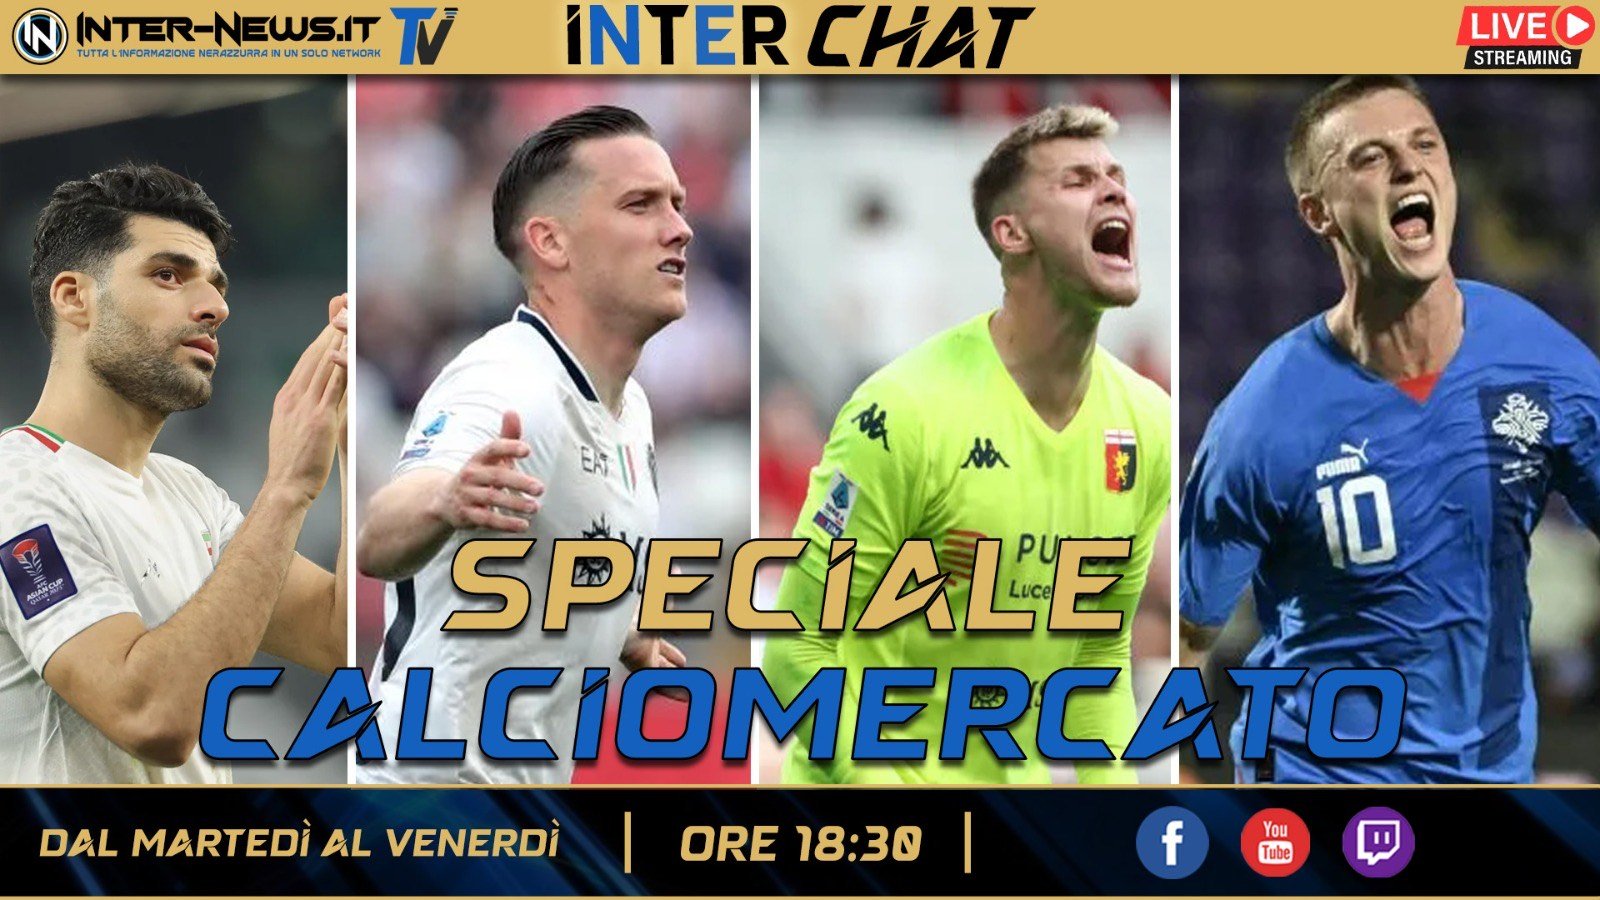 Speciale Calciomercato: arrivi e addii, si parte! | Inter Chat LIVE